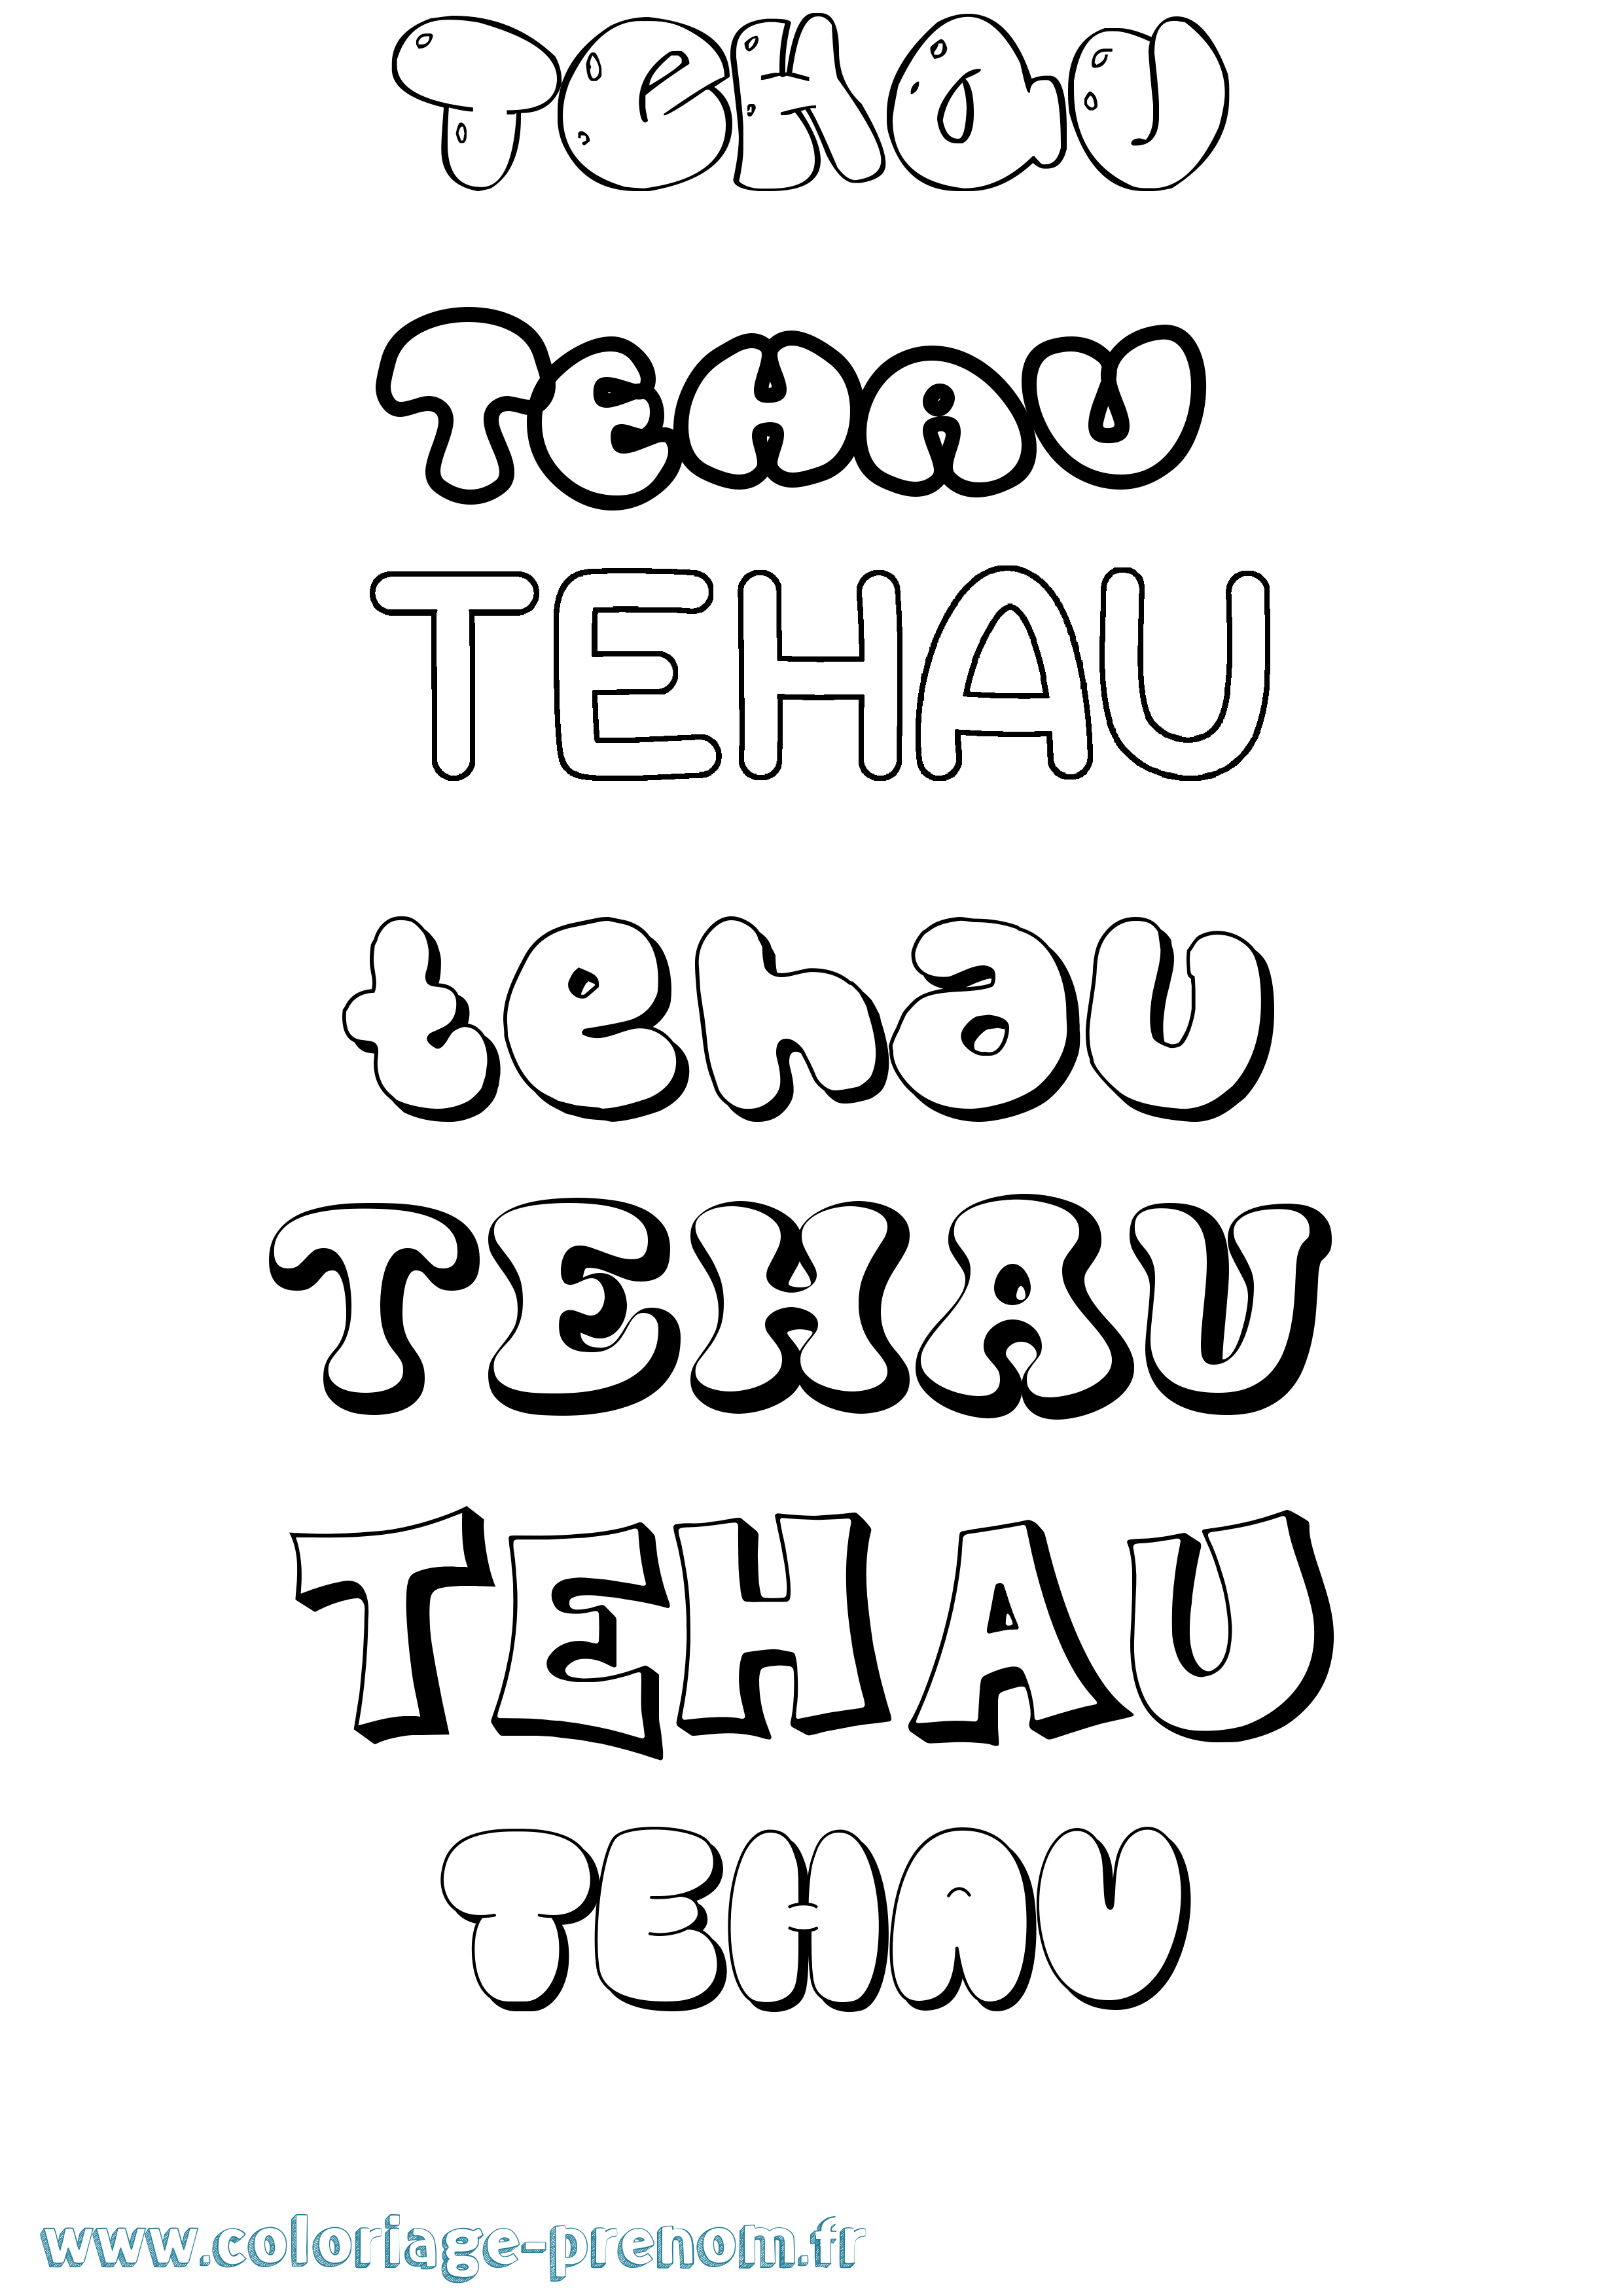 Coloriage prénom Tehau Bubble